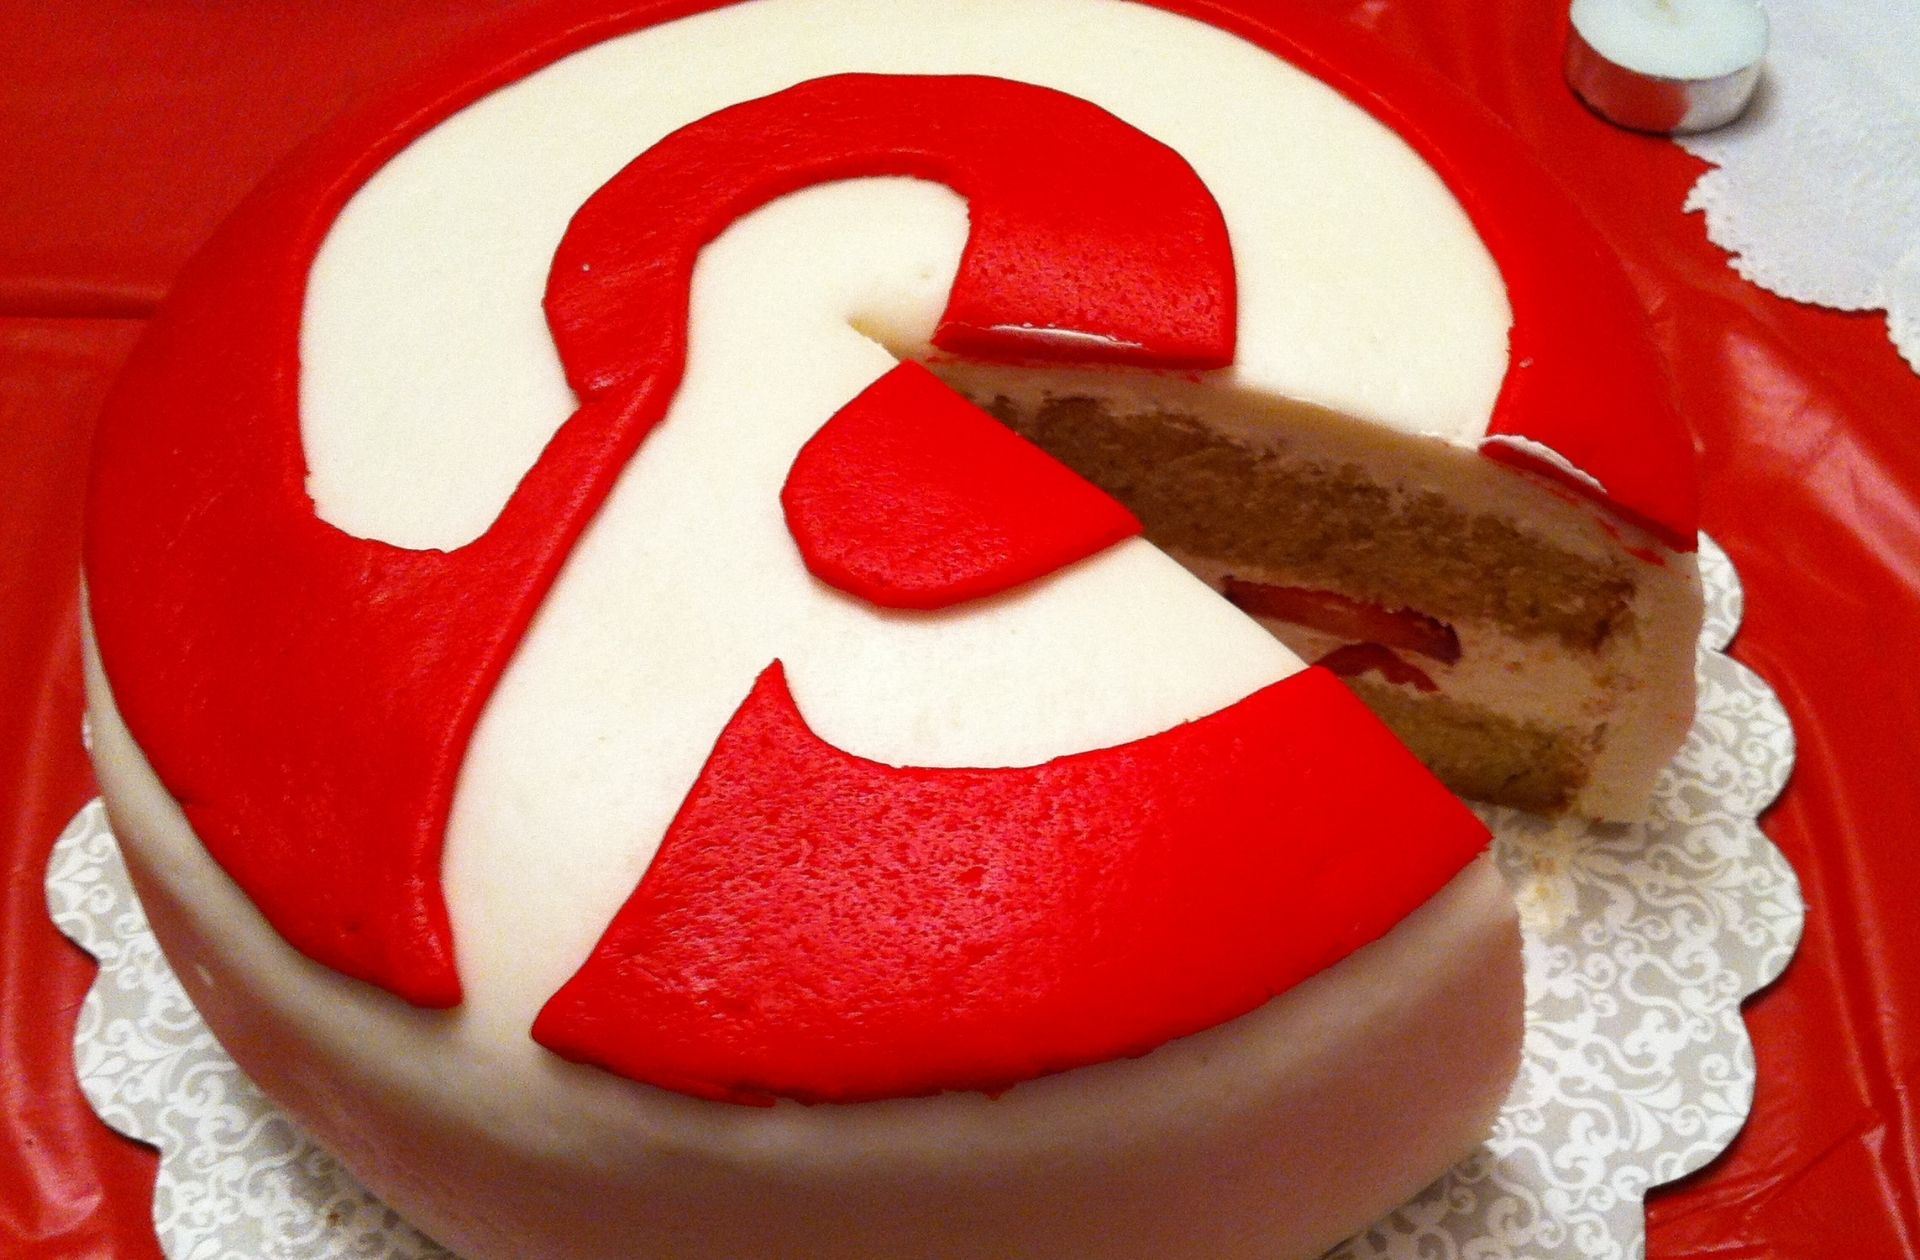 Une influenceuse affirme être la co-créatrice de Pinterest… et elle veut sa part du gâteau